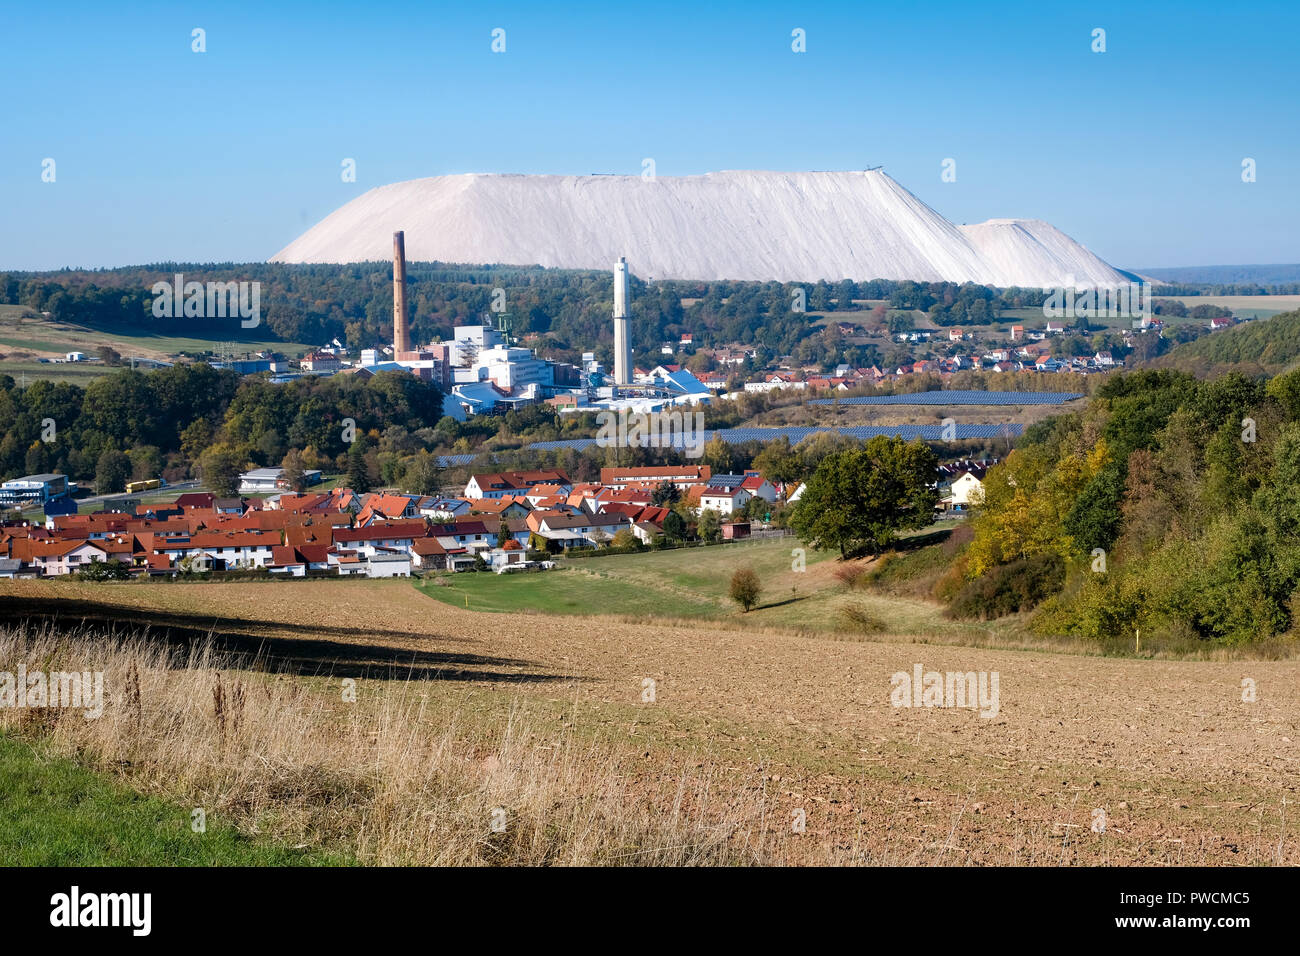 Impianto di cloruro di potassio e di discarica di rifiuti della società K + S Kali GmbH, Werra impianto, ubicazione Unterbreizbach, Turingia, Germania, 14.10.2018 Foto Stock